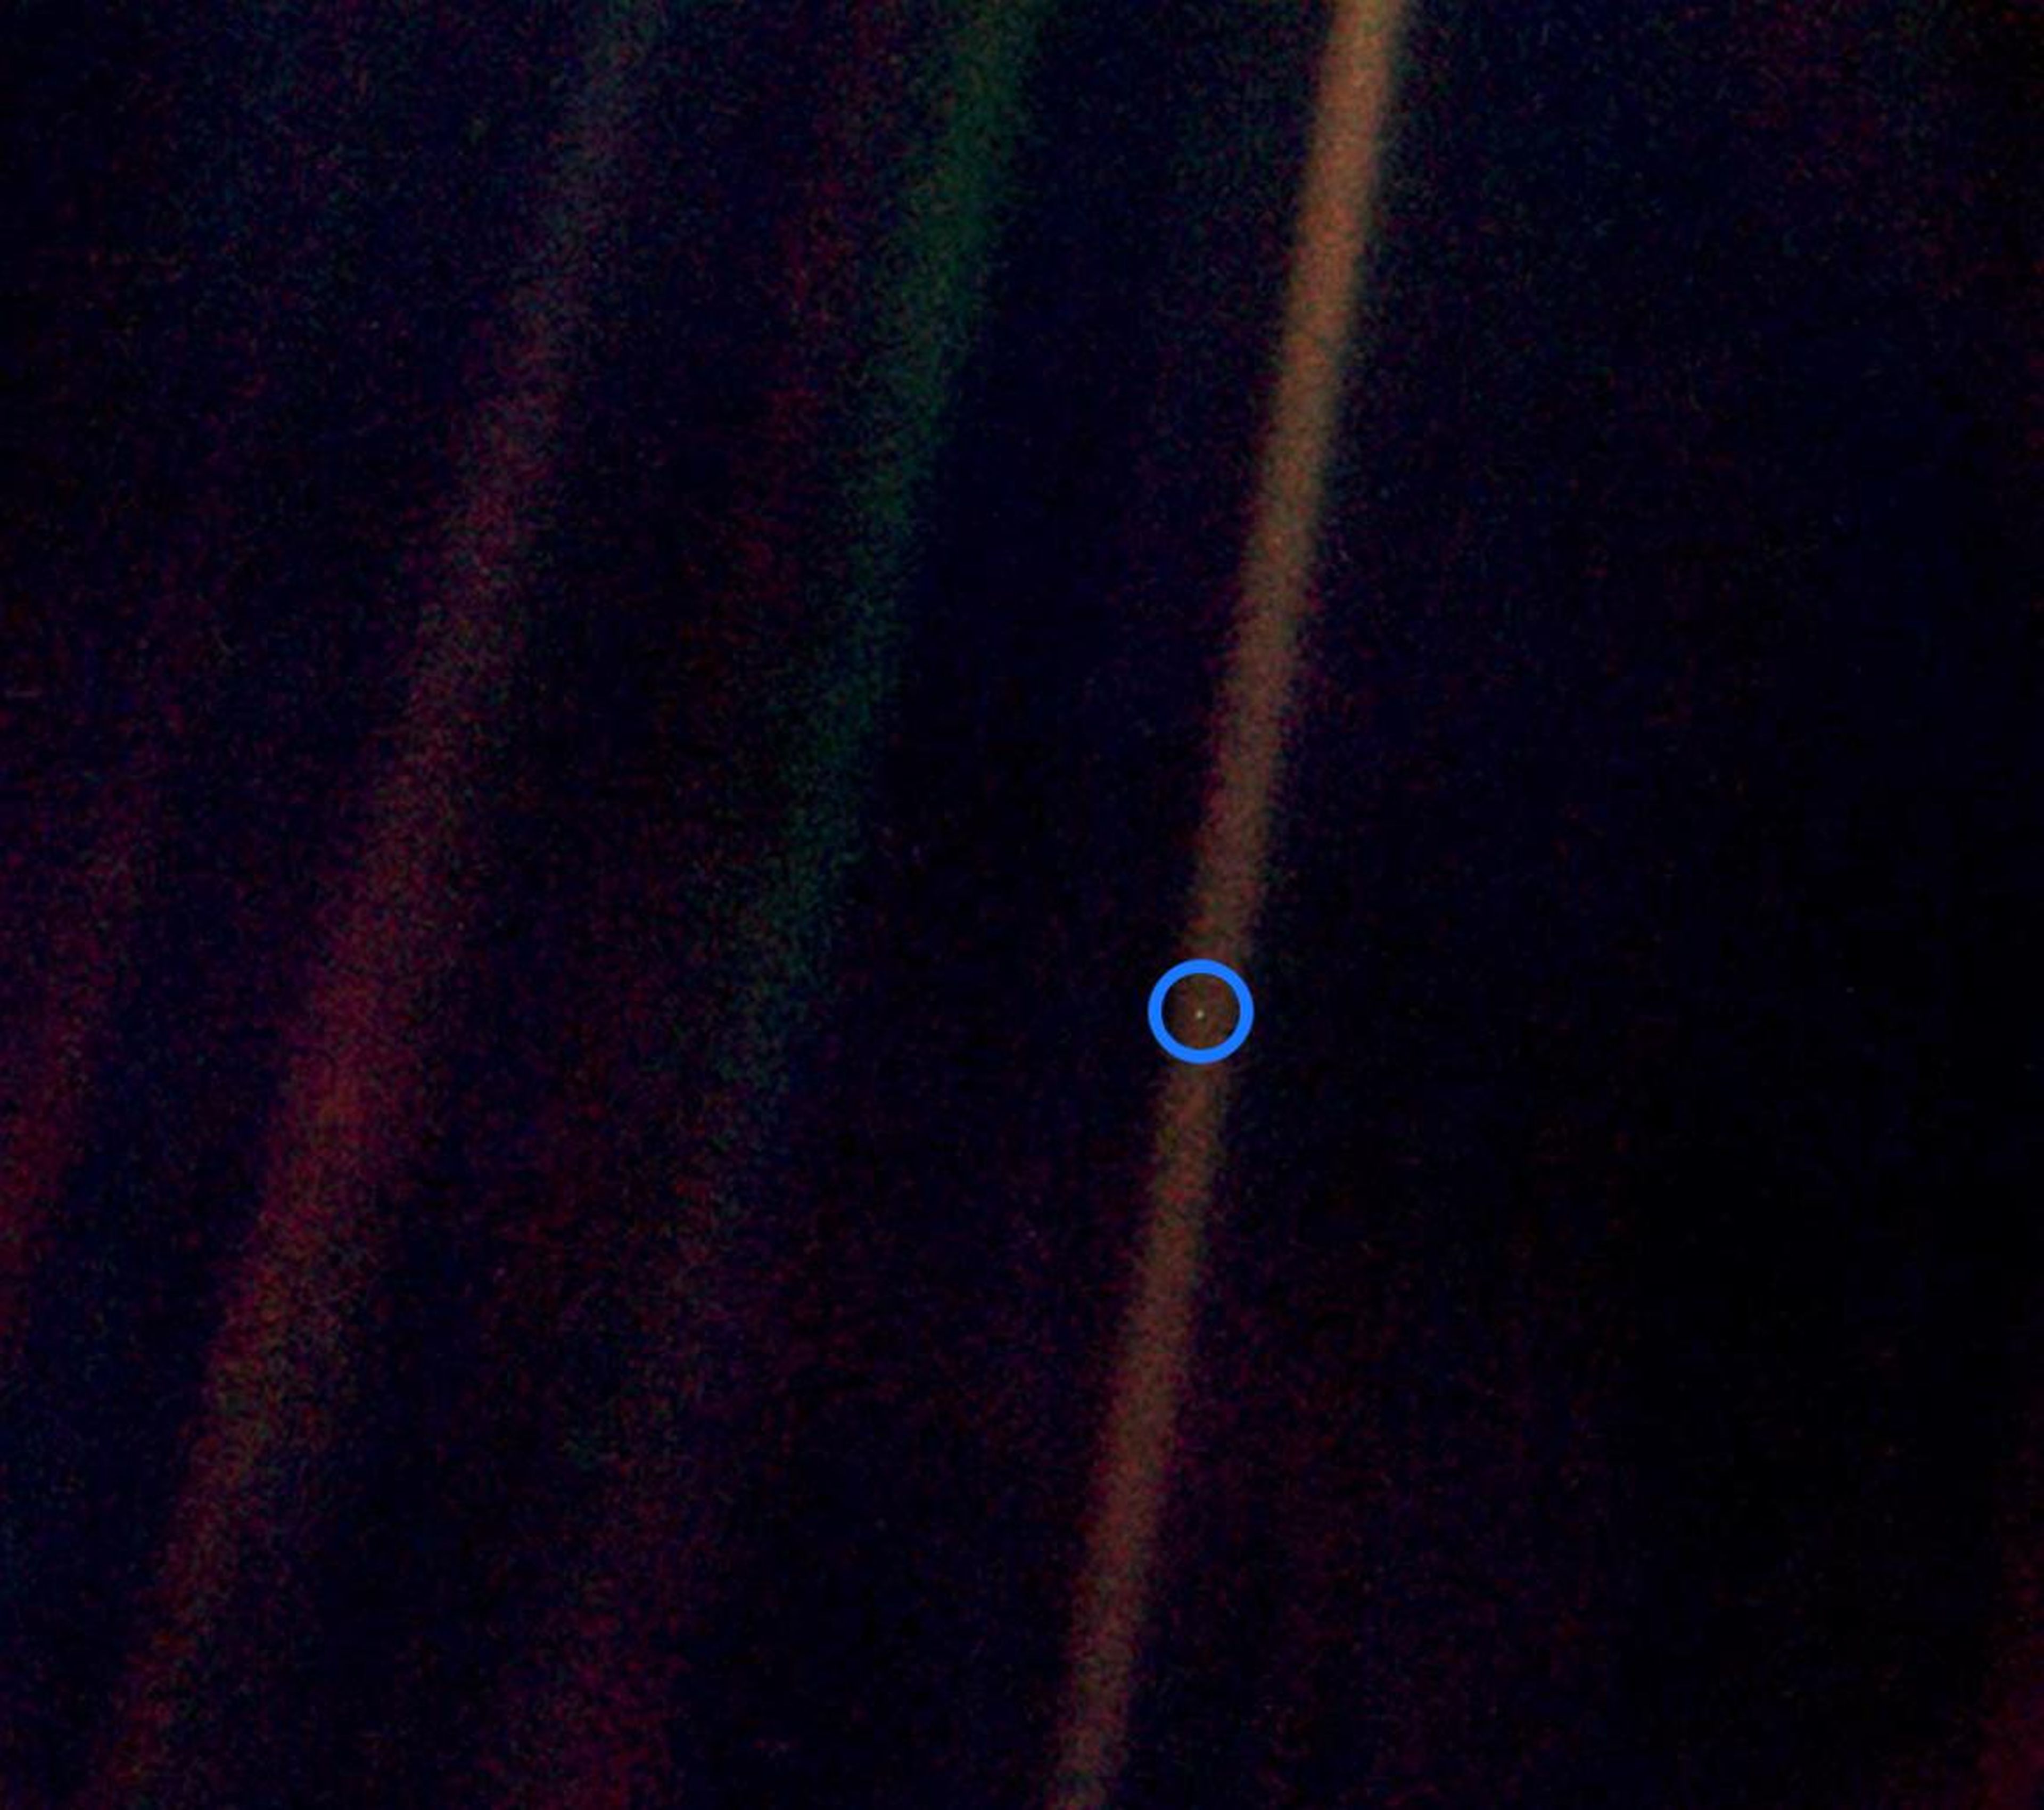 A miles de millones de kilómetros de la Tierra, como dijo Carl Sagan, nuestro mundo es solo un "punto azul pálido", un orbe pequeño y solitario donde se resuelven todos nuestros triunfos y tragedias